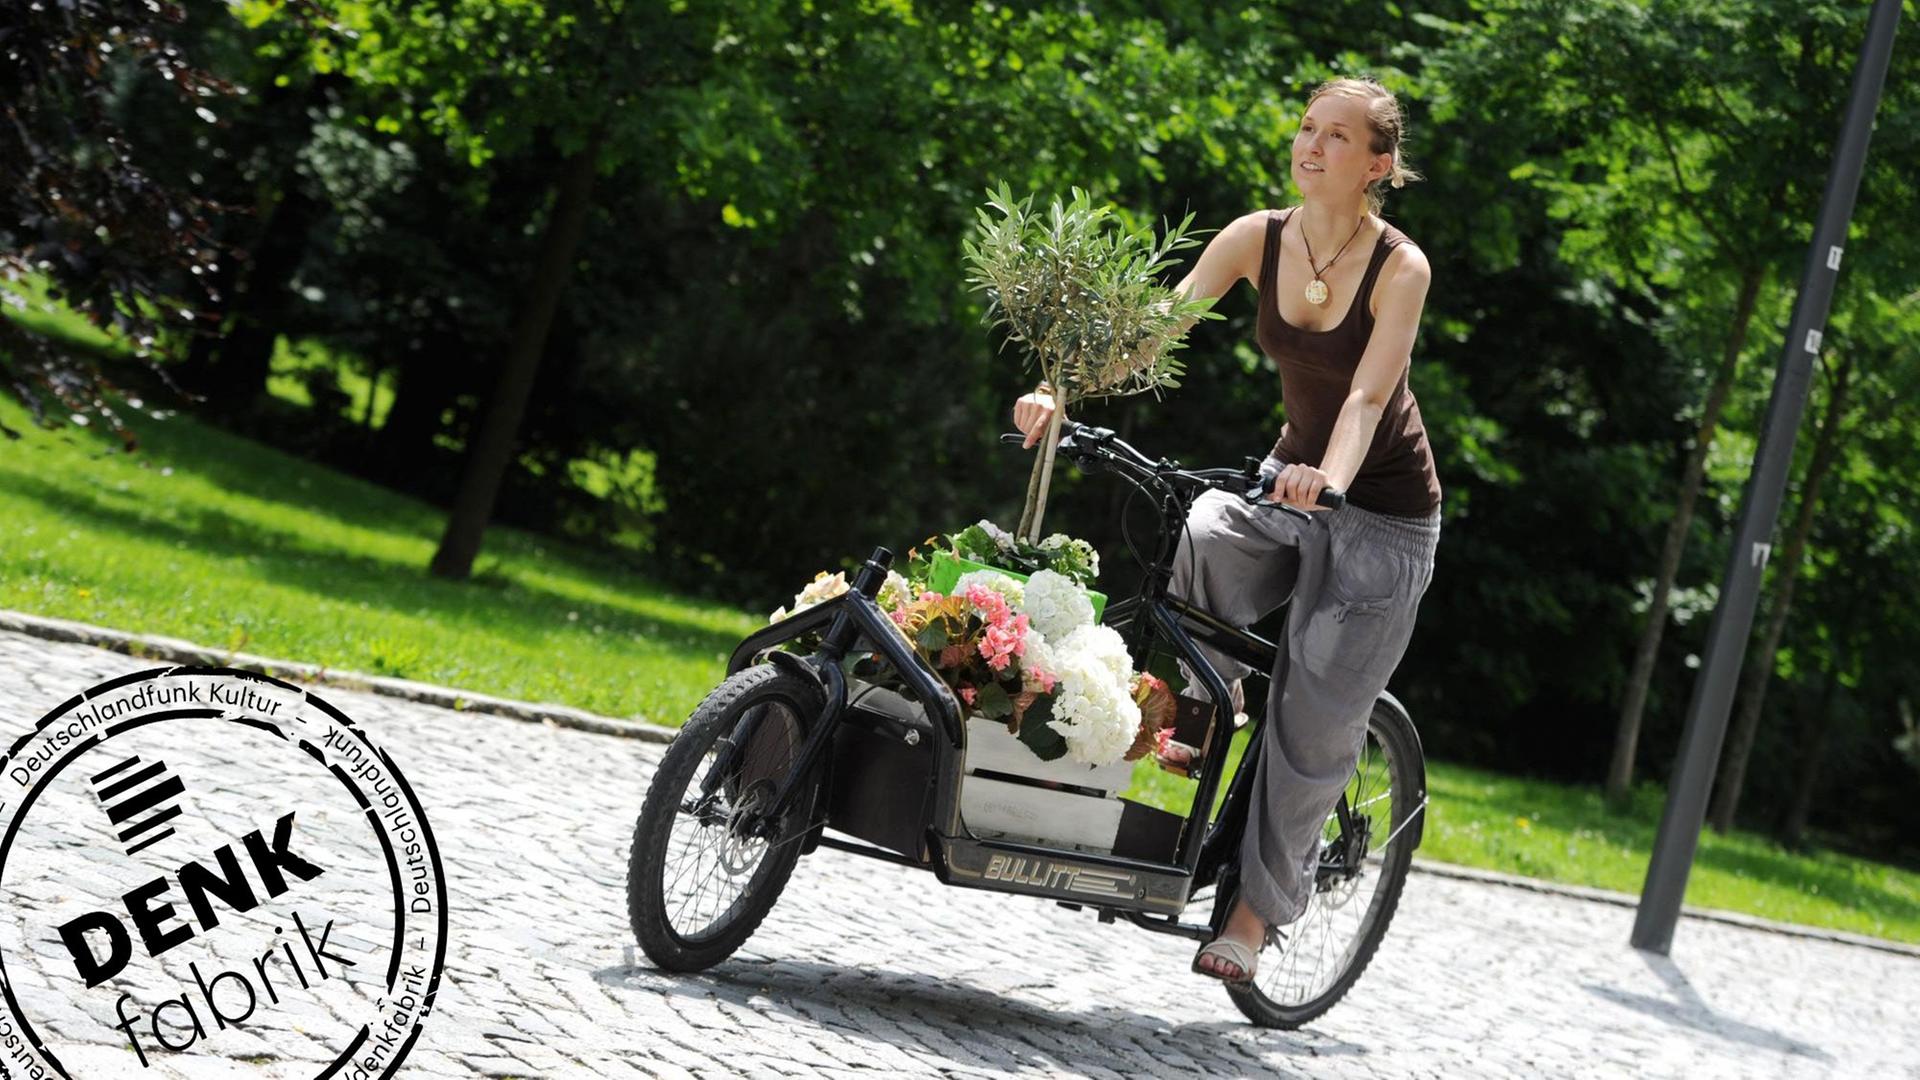 Eine Frau fährt mit einem Transportrad, das mit Blumen beladen ist. Mit Denkfabrik-Stempel